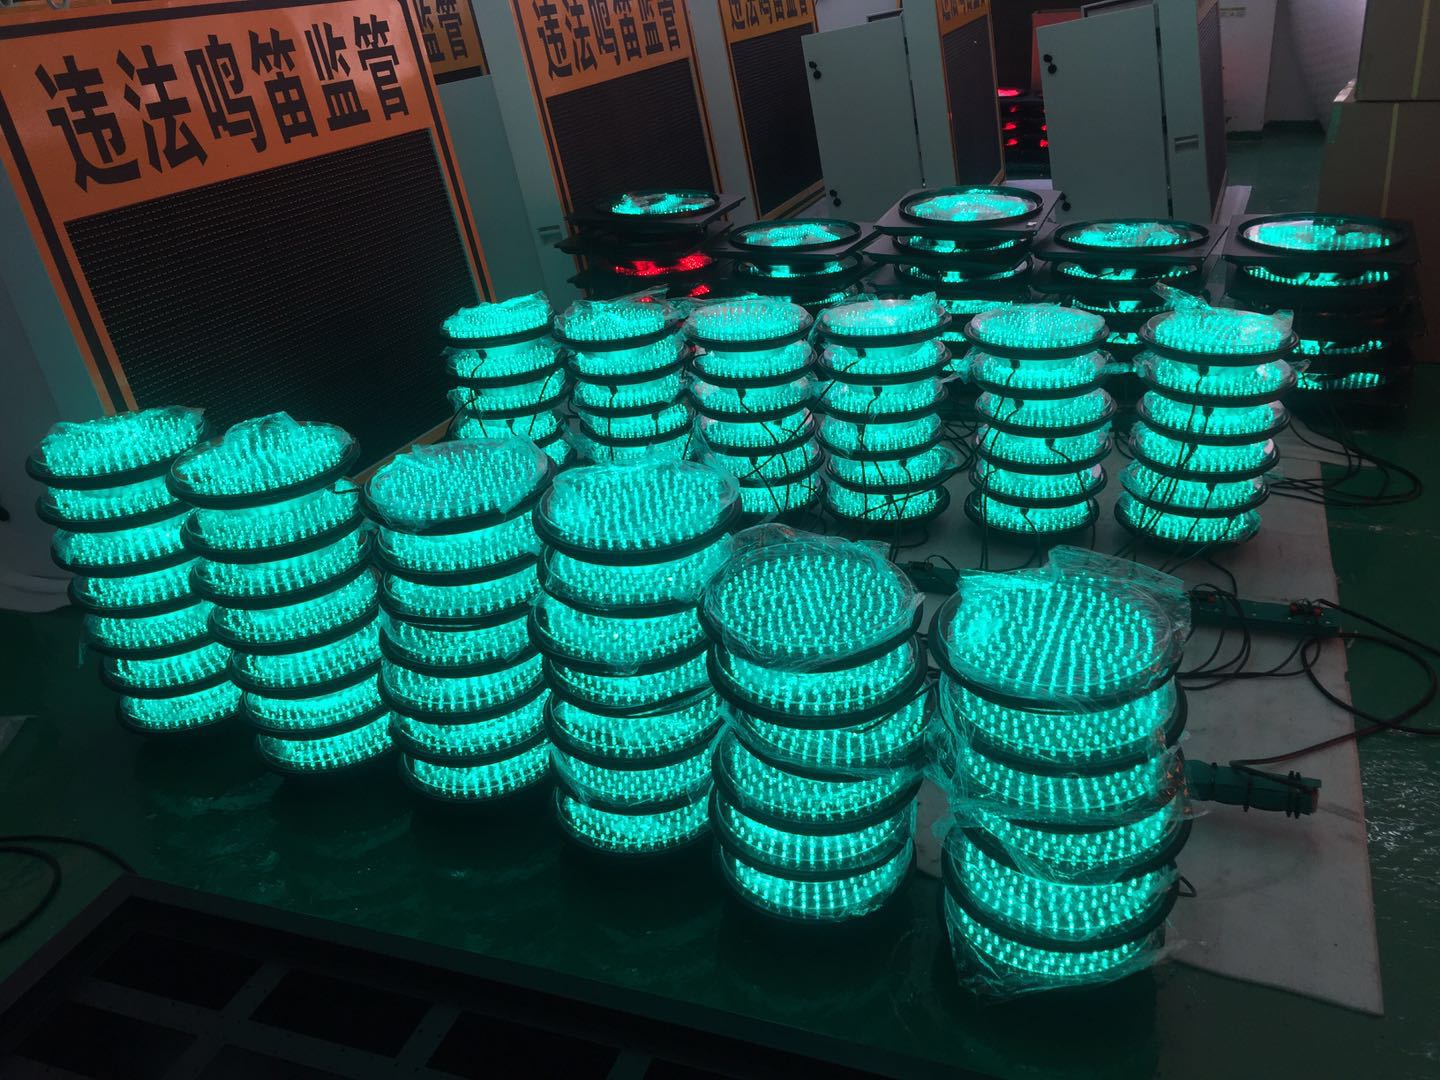 300mm green LED traffic light module doing aging testing